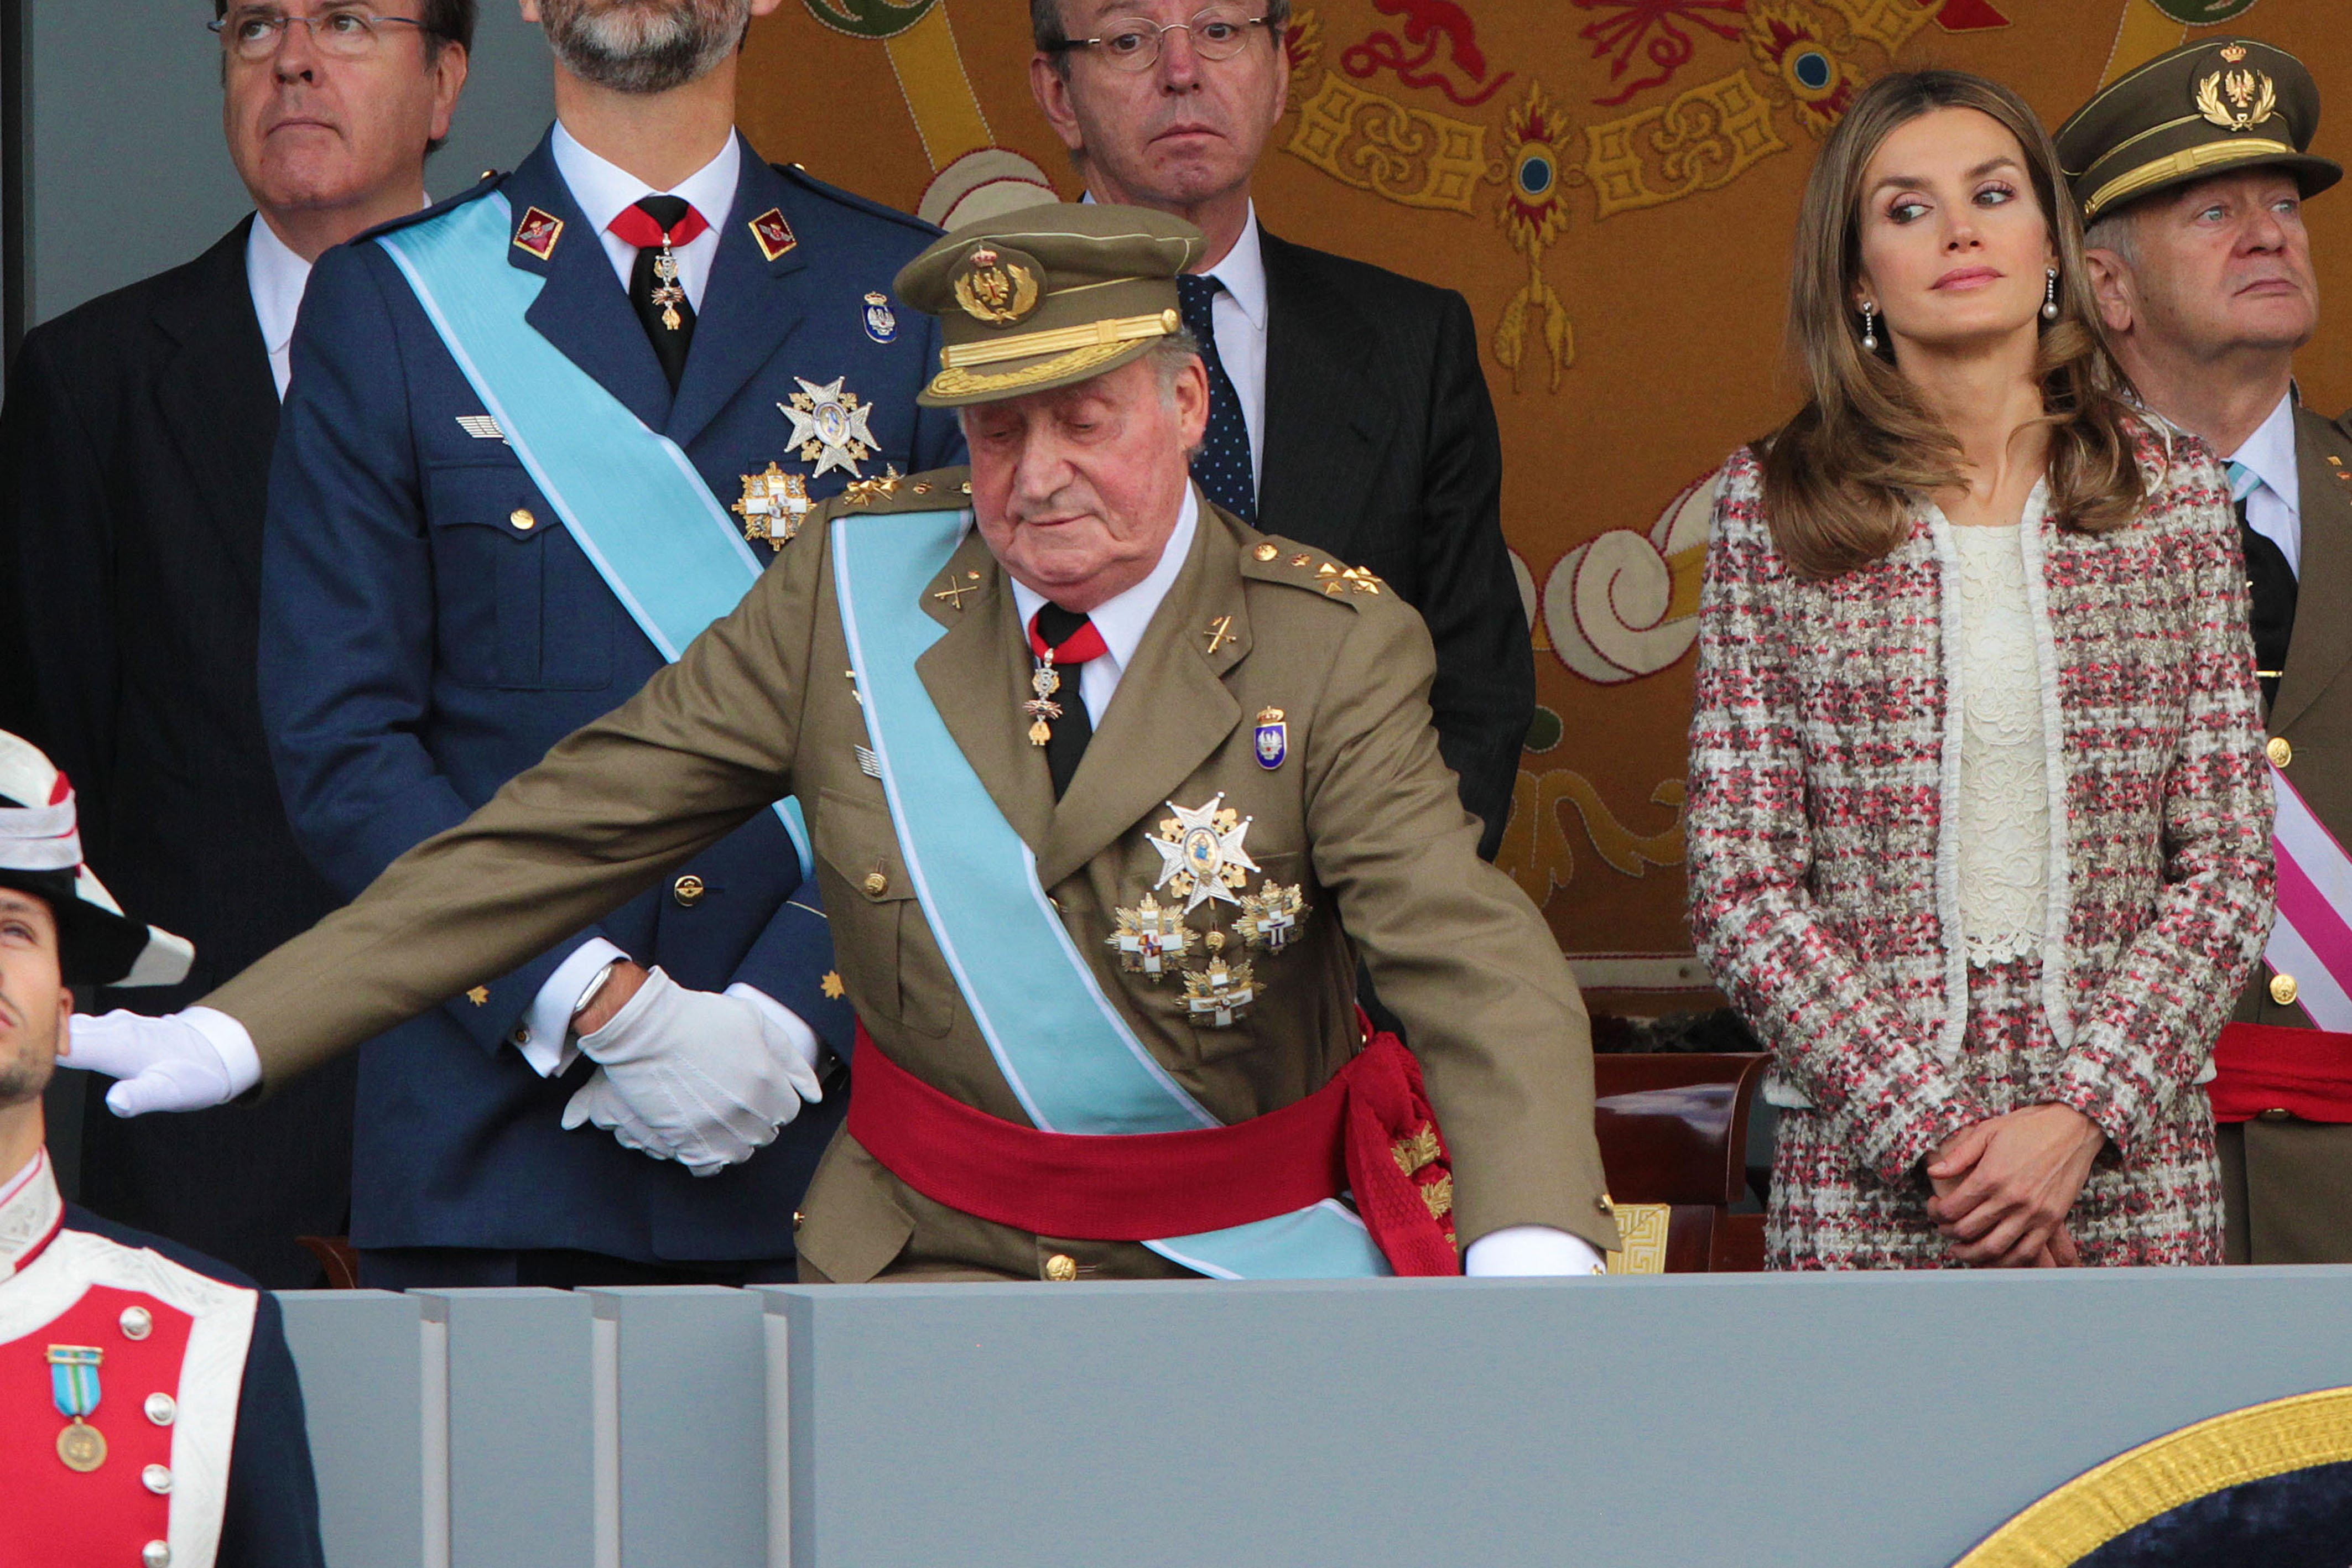 Joan Carles culpa Letícia de la seva caiguda per dues humiliacions repugnants